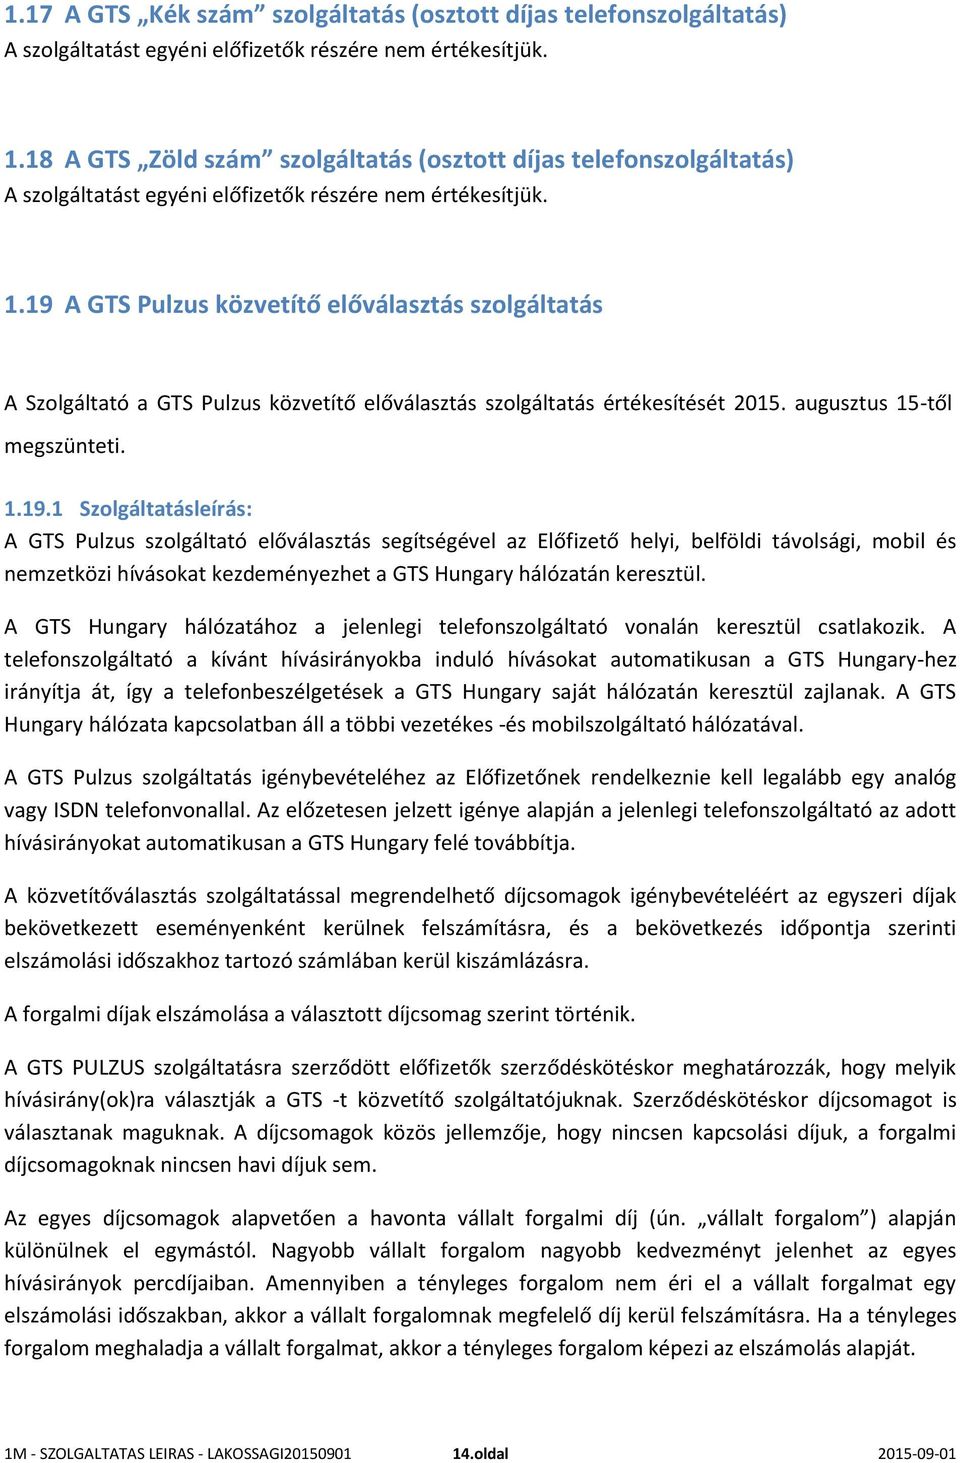 19 A GTS Pulzus közvetítő előválasztás szolgáltatás A Szolgáltató a GTS Pulzus közvetítő előválasztás szolgáltatás értékesítését 2015. augusztus 15-től megszünteti. 1.19.1 Szolgáltatásleírás: A GTS Pulzus szolgáltató előválasztás segítségével az Előfizető helyi, belföldi távolsági, mobil és nemzetközi hívásokat kezdeményezhet a GTS Hungary hálózatán keresztül.